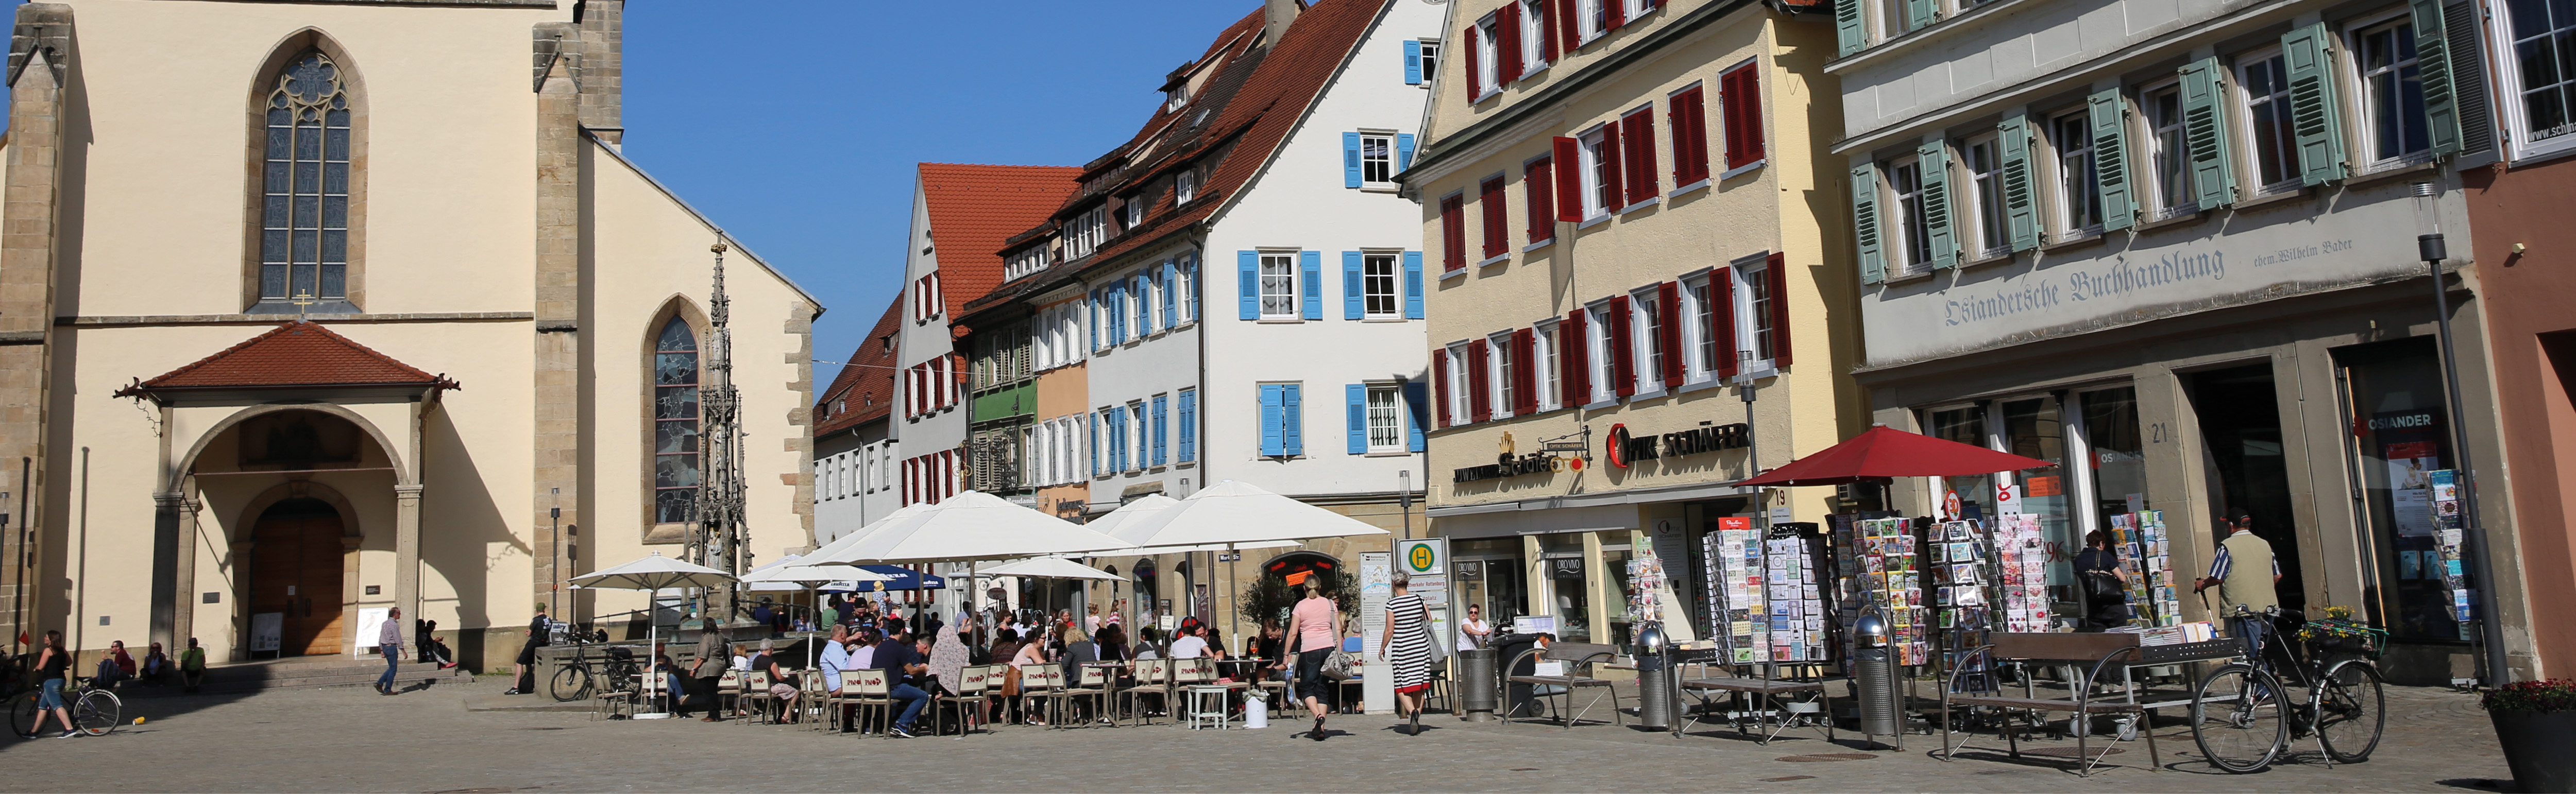 Rottenburger Marktplatz